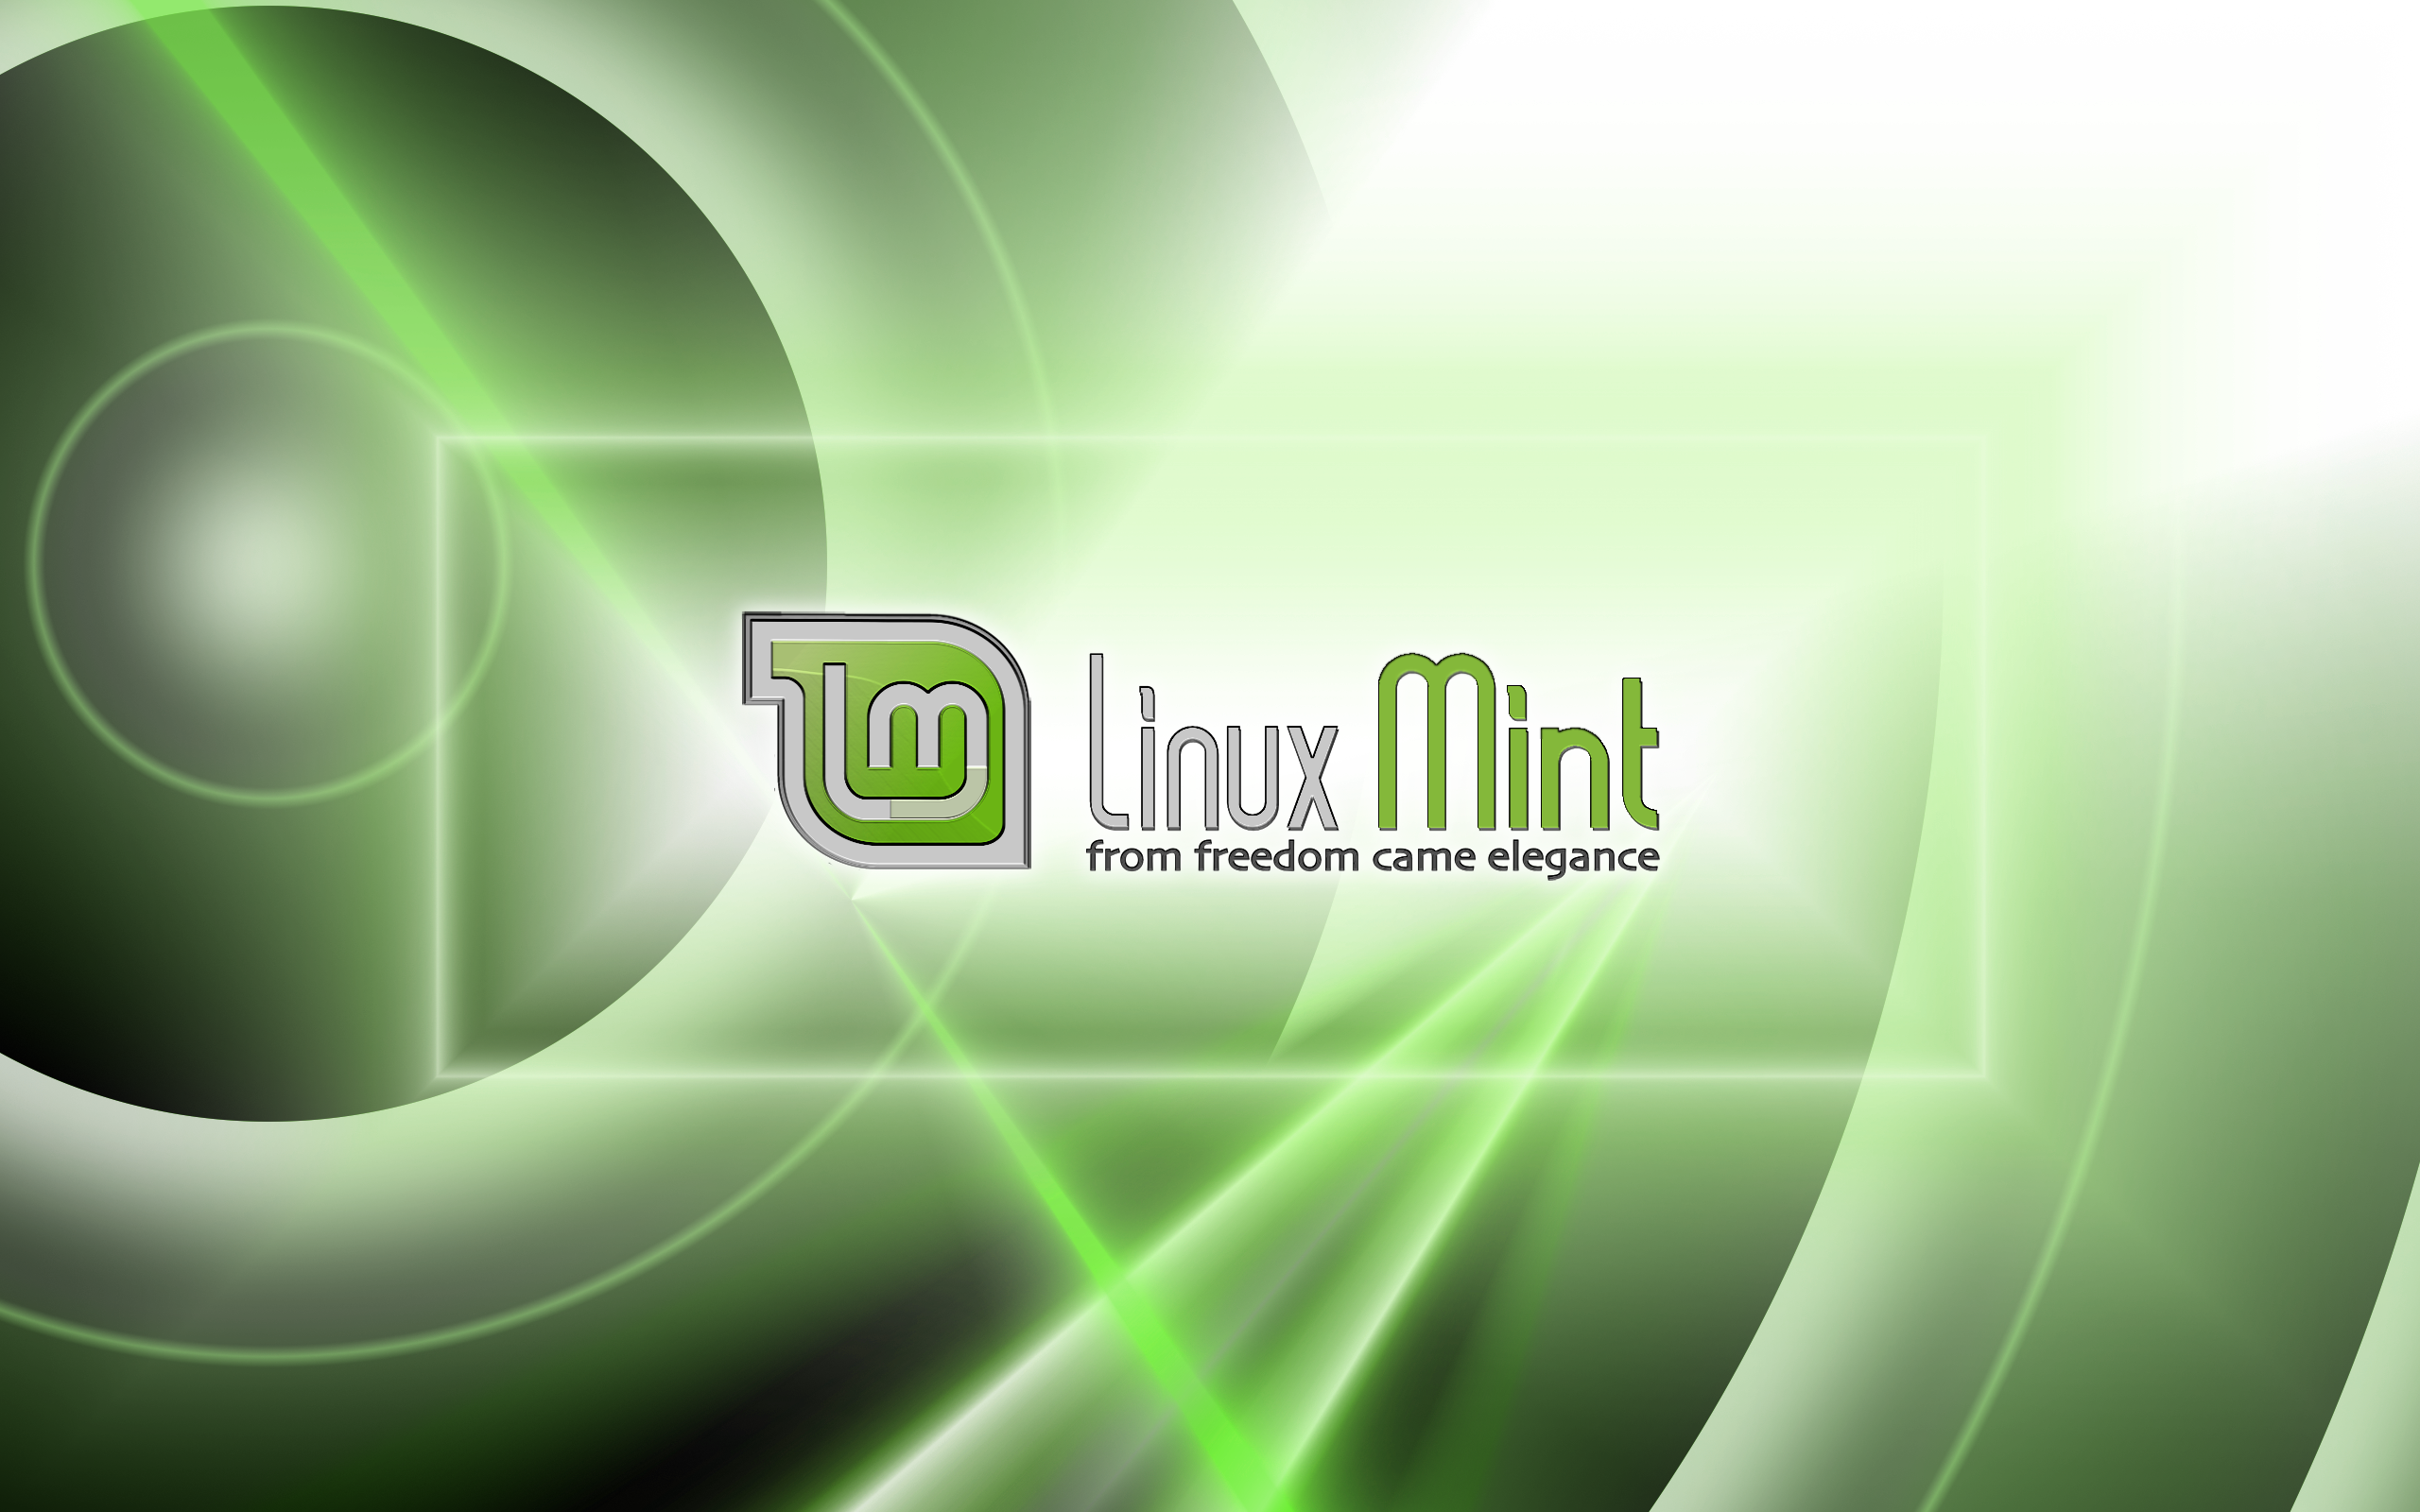 Linux Mint Forums